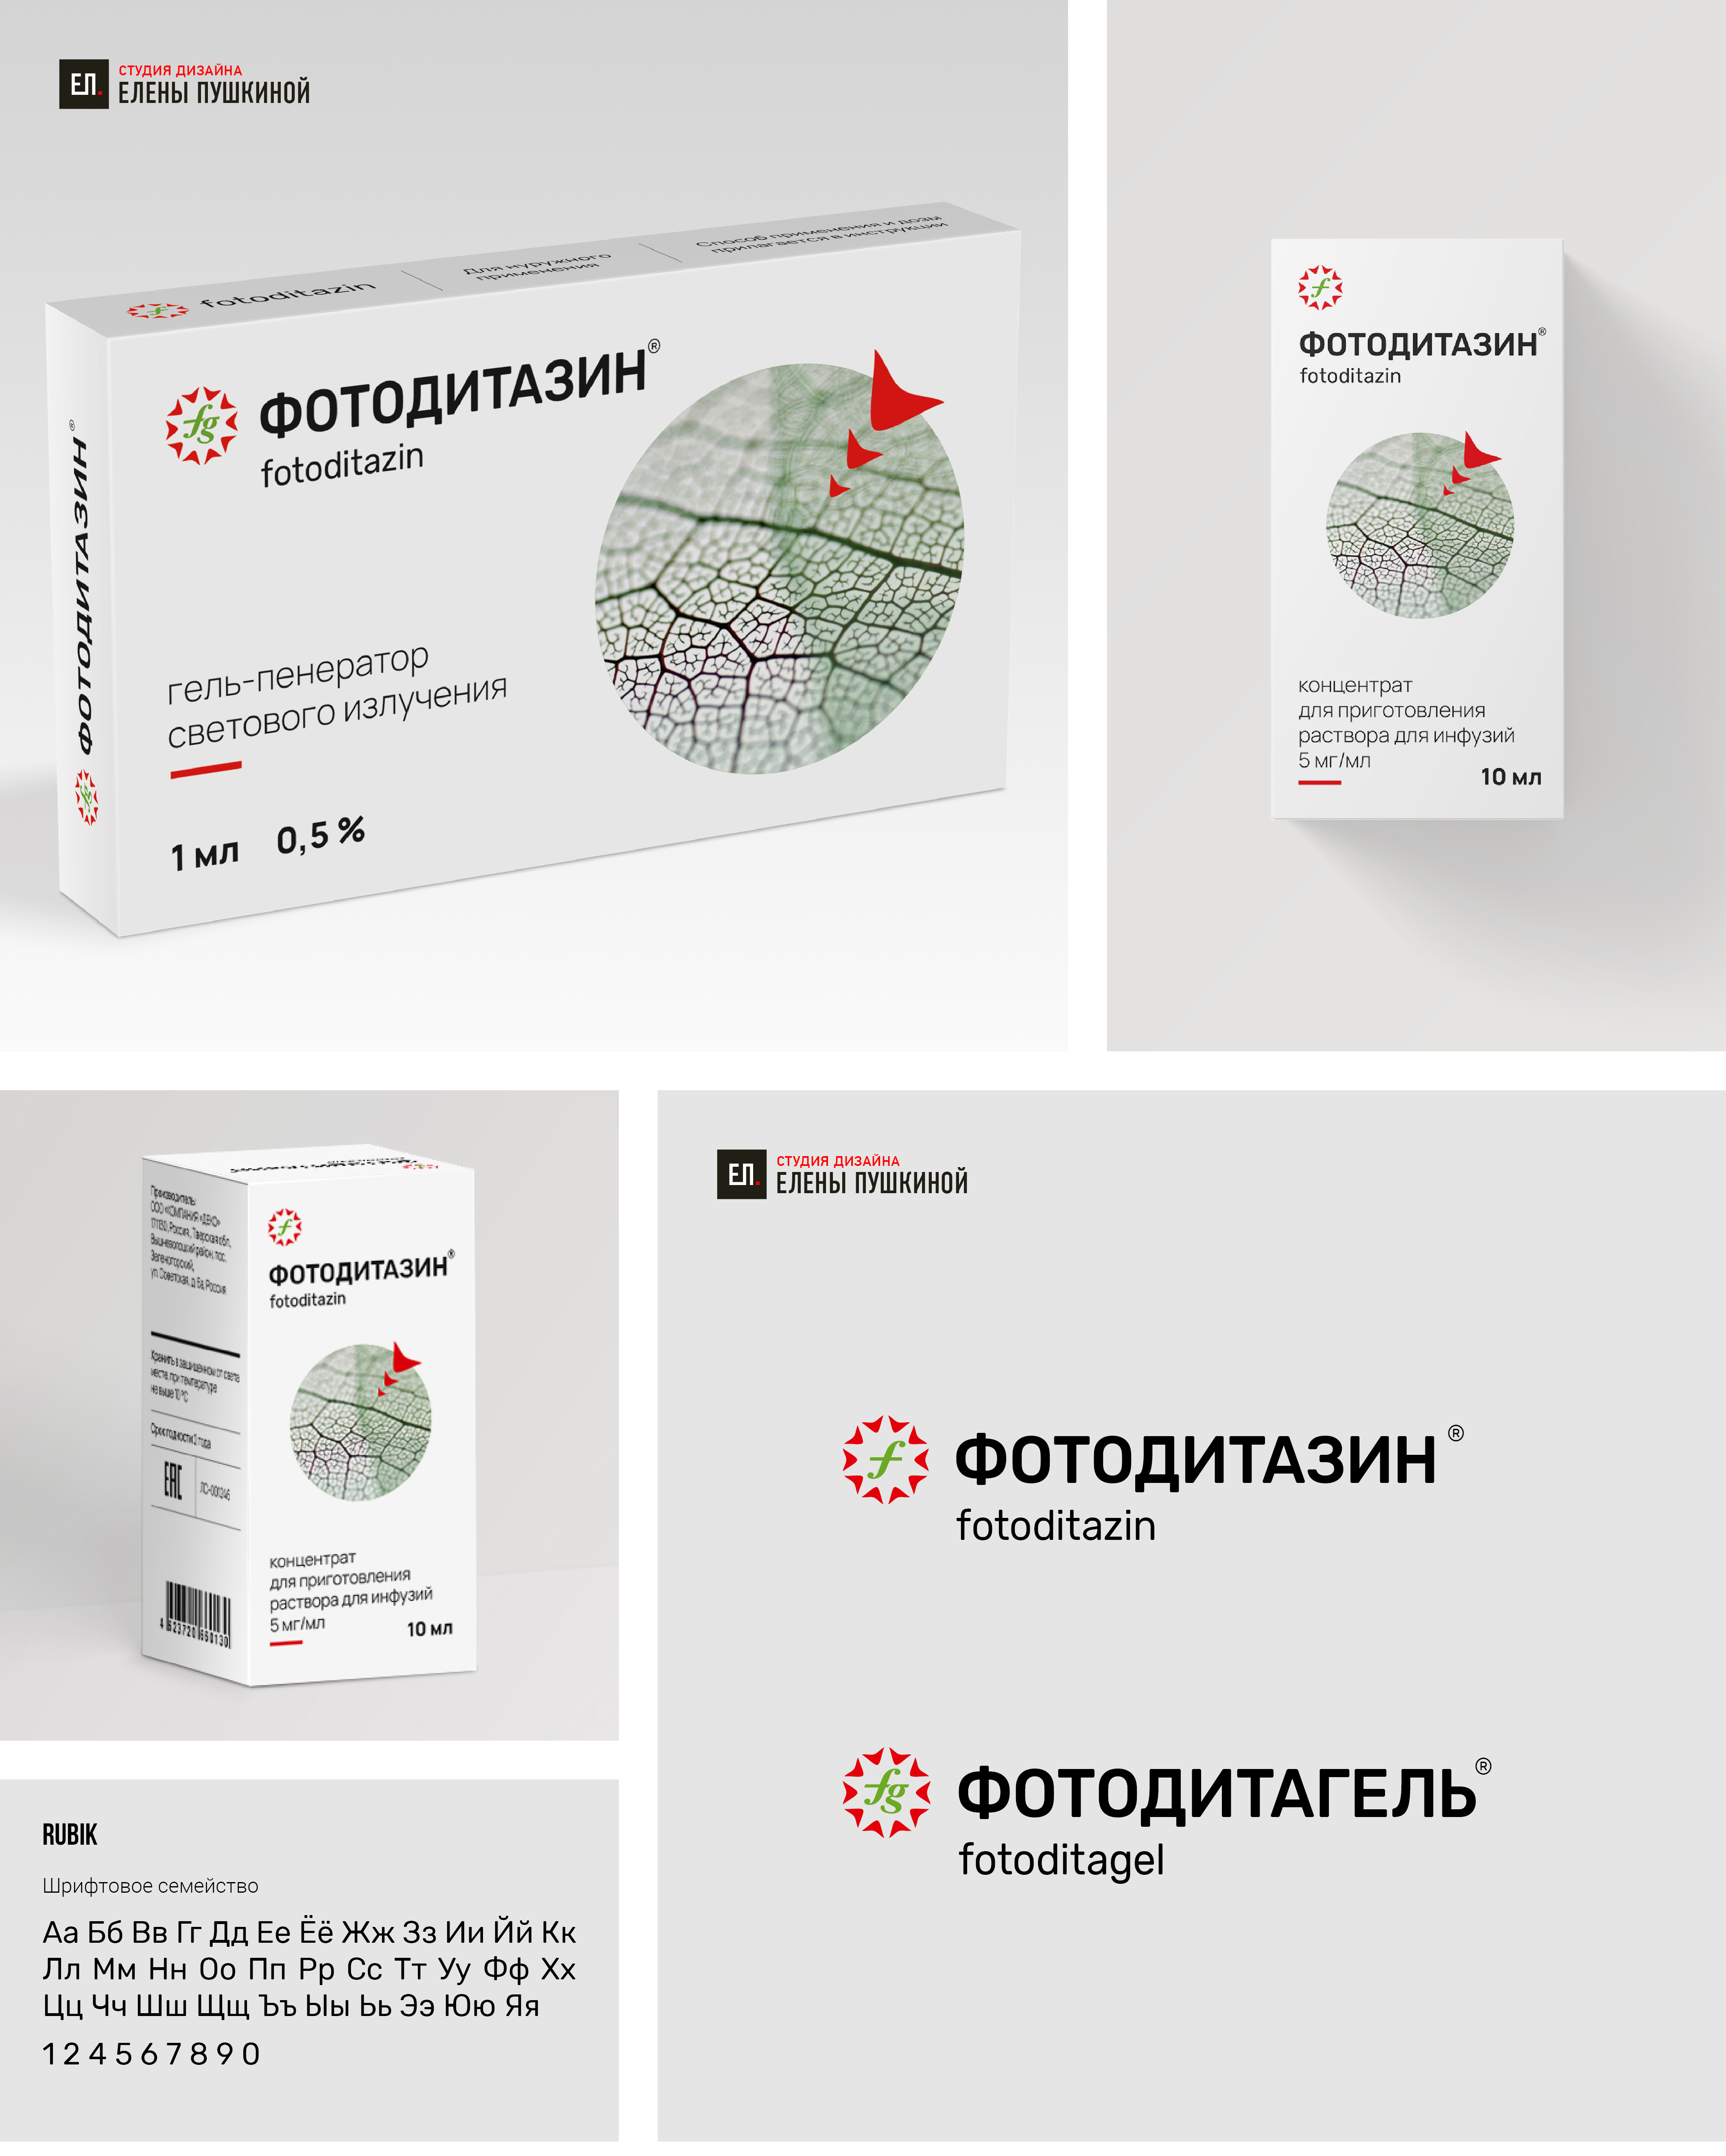 Редизайн торговых марок Фотодитазин и Фотодитагель. Создание дизайна упаковки для линейки лекарственных препаратов Дизайн упаковки Портфолио